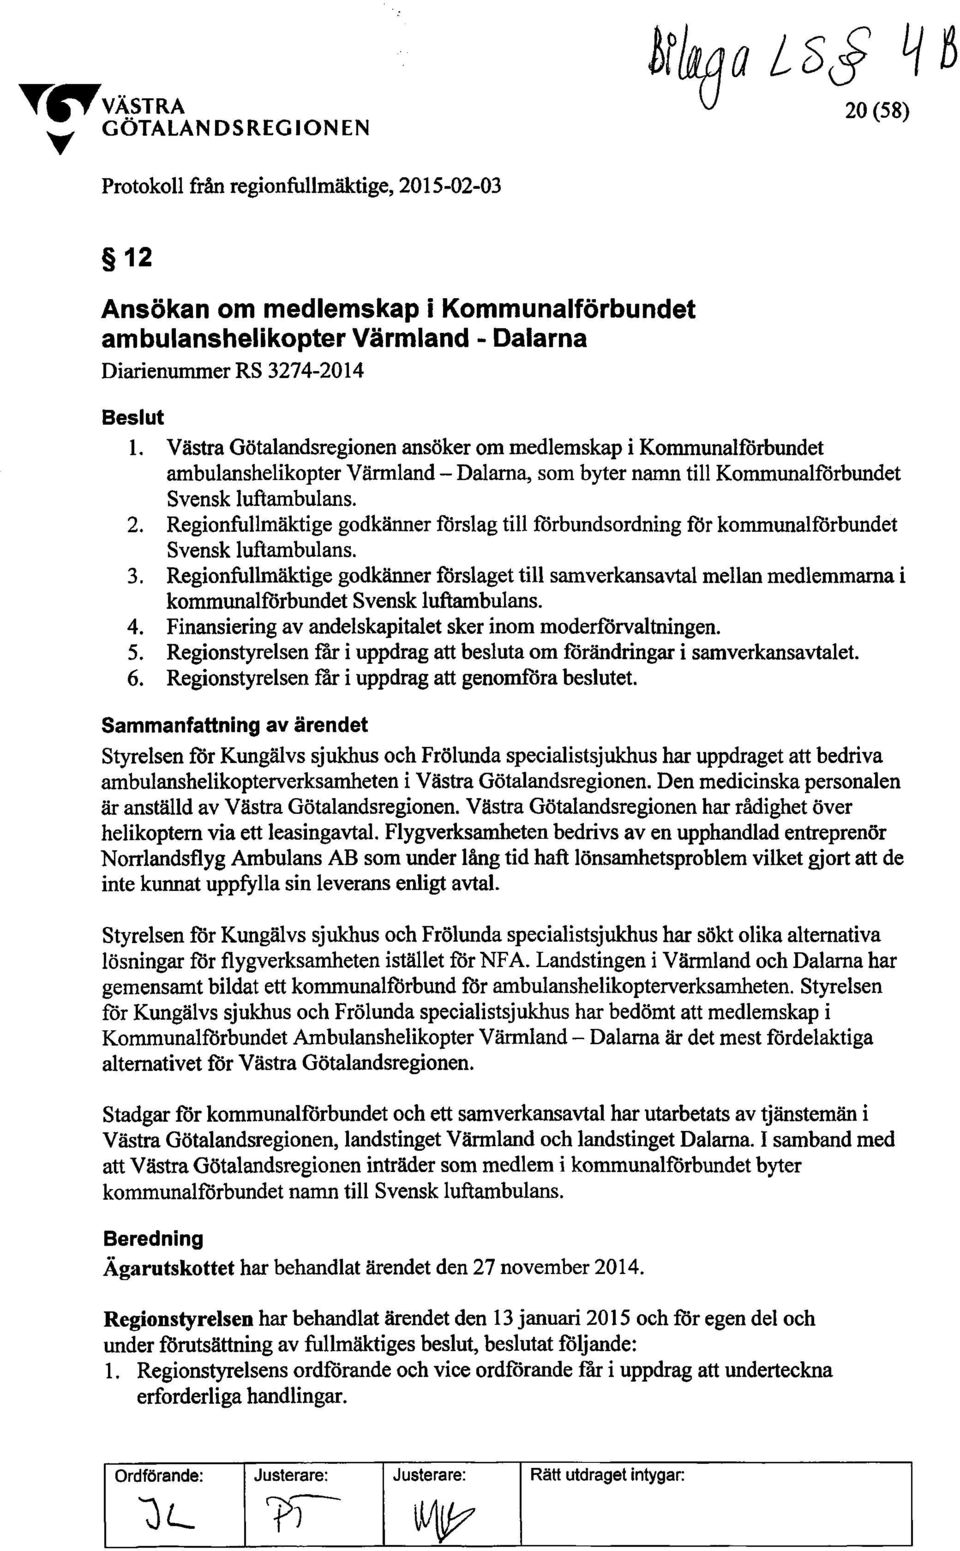 Västra Götalandsregionen ansöker om medlemskap i Kommunalförbundet ambulanshelikopter Värmland - Dalarna, som byter namn till Kommunalförbundet Svensk luftambulans. 2.